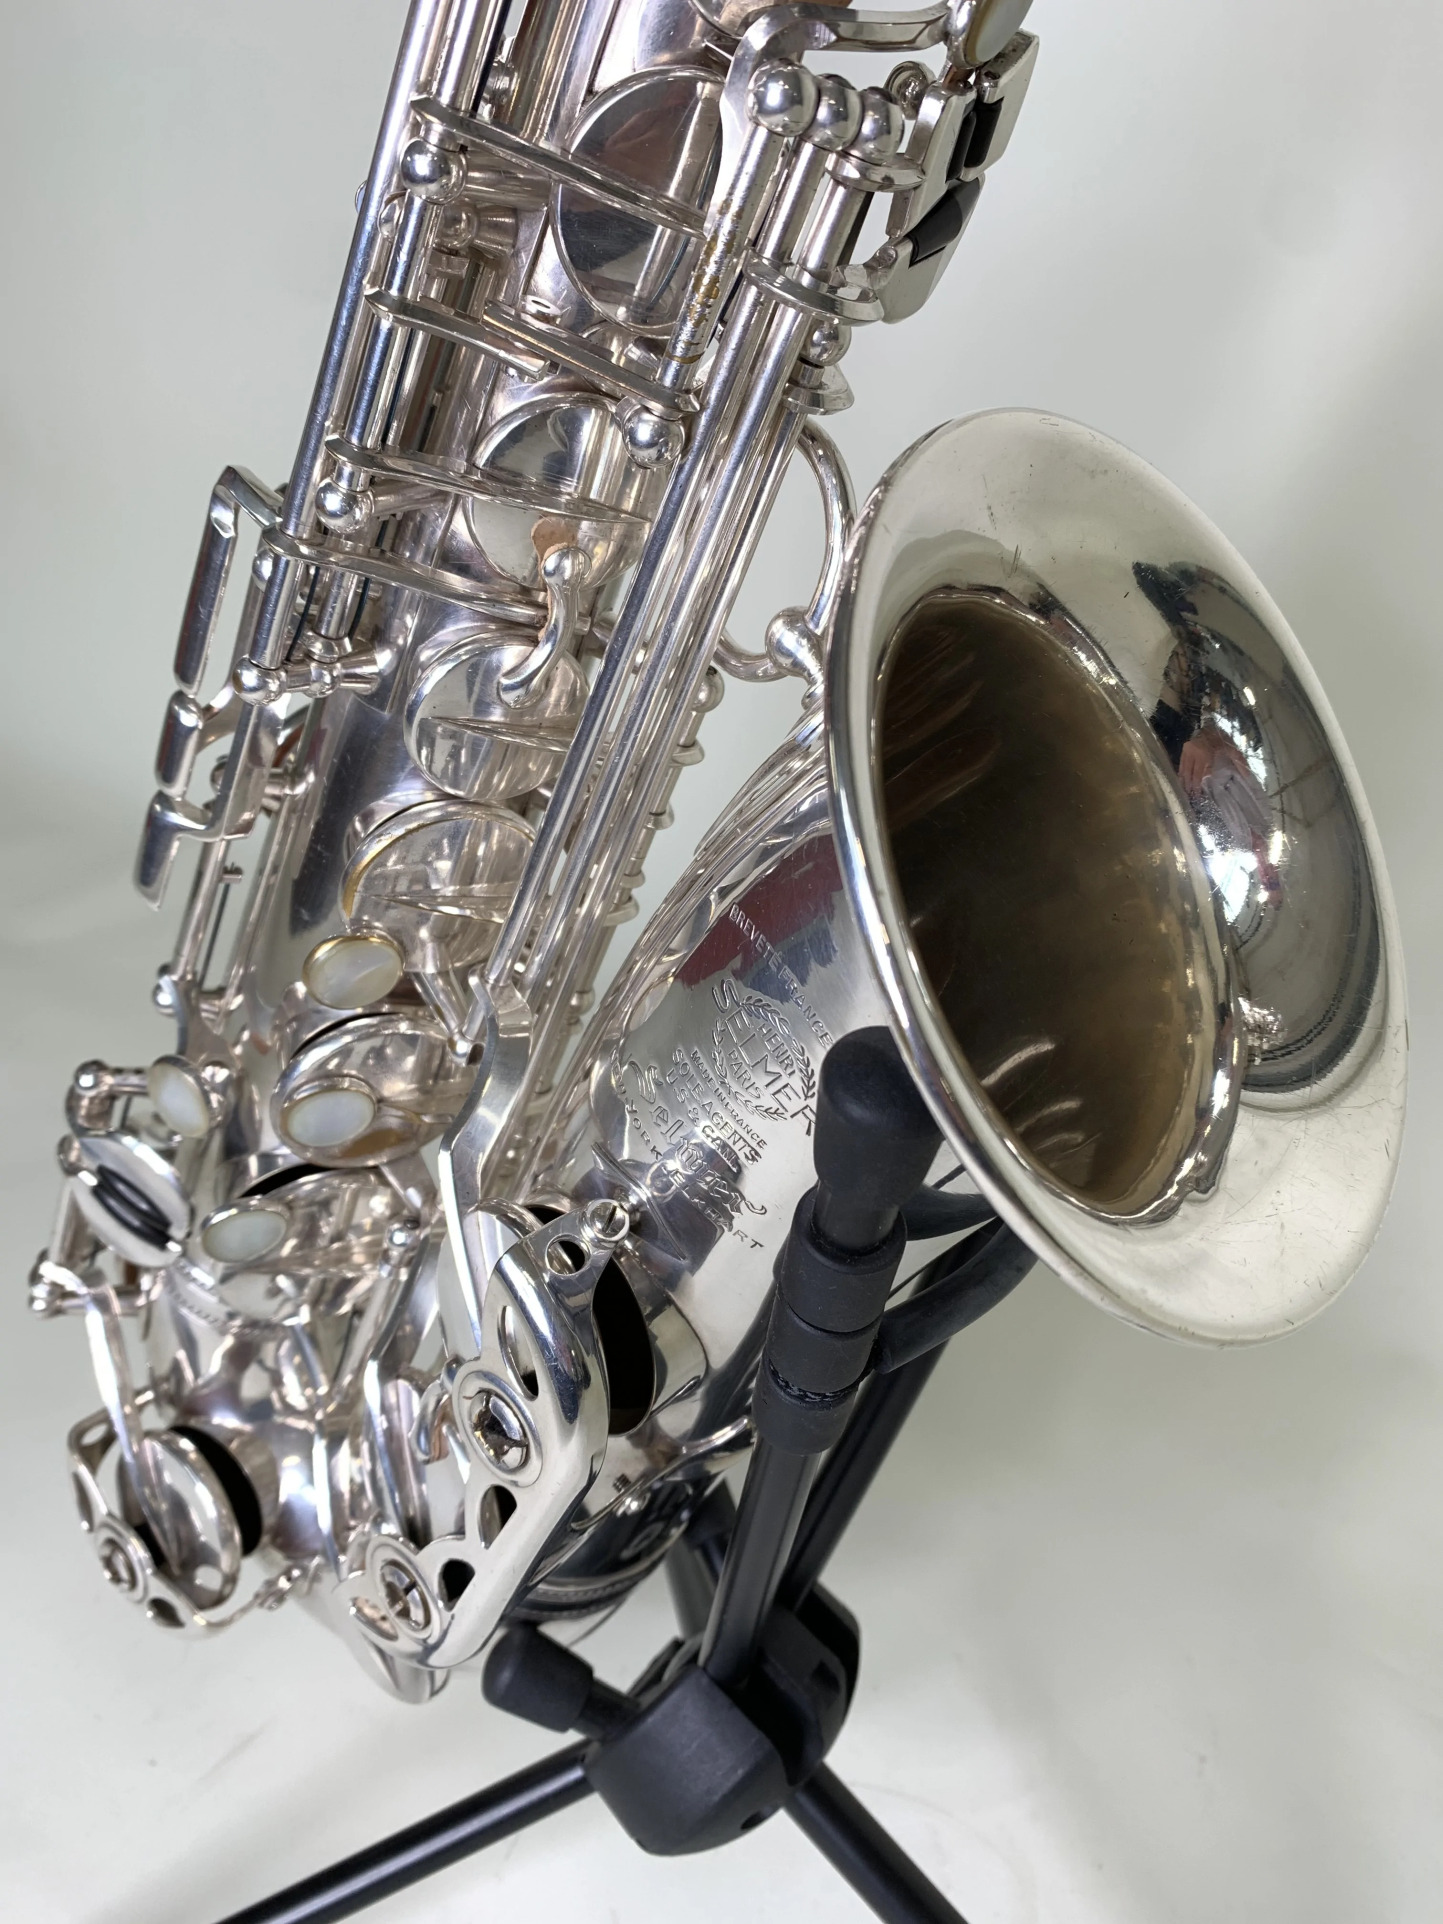 Balanced Action alto saxophone 30033